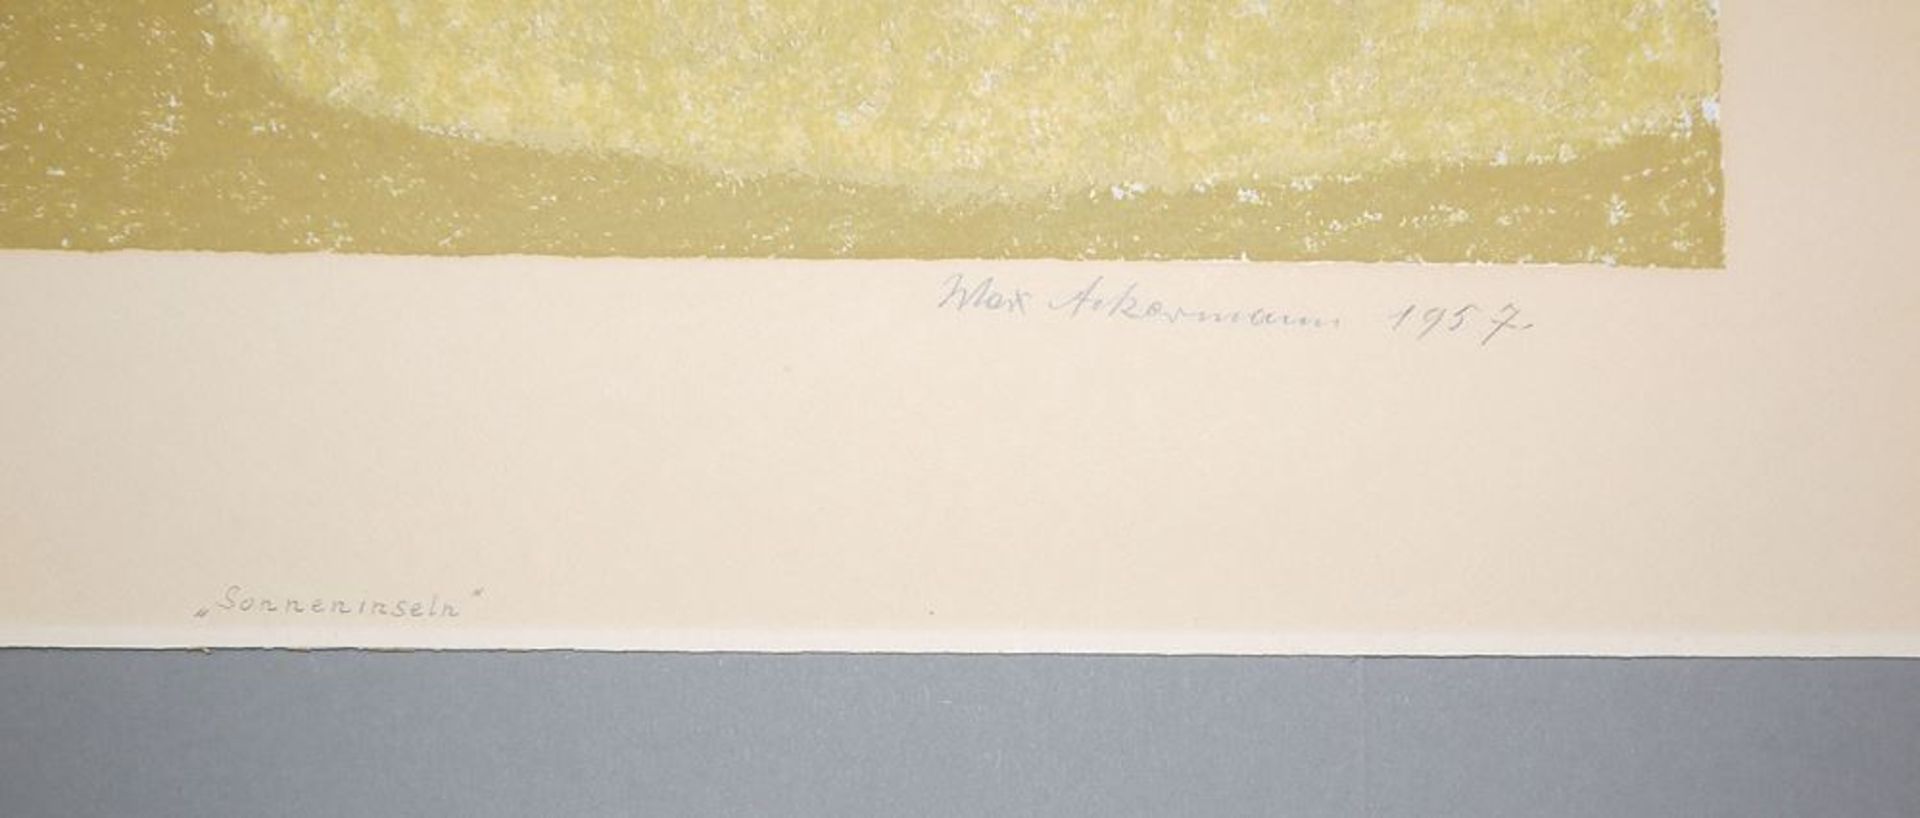 Max Ackermann, "Sonneninseln", Farbsiebdruck von 1957, sign. - Image 2 of 2